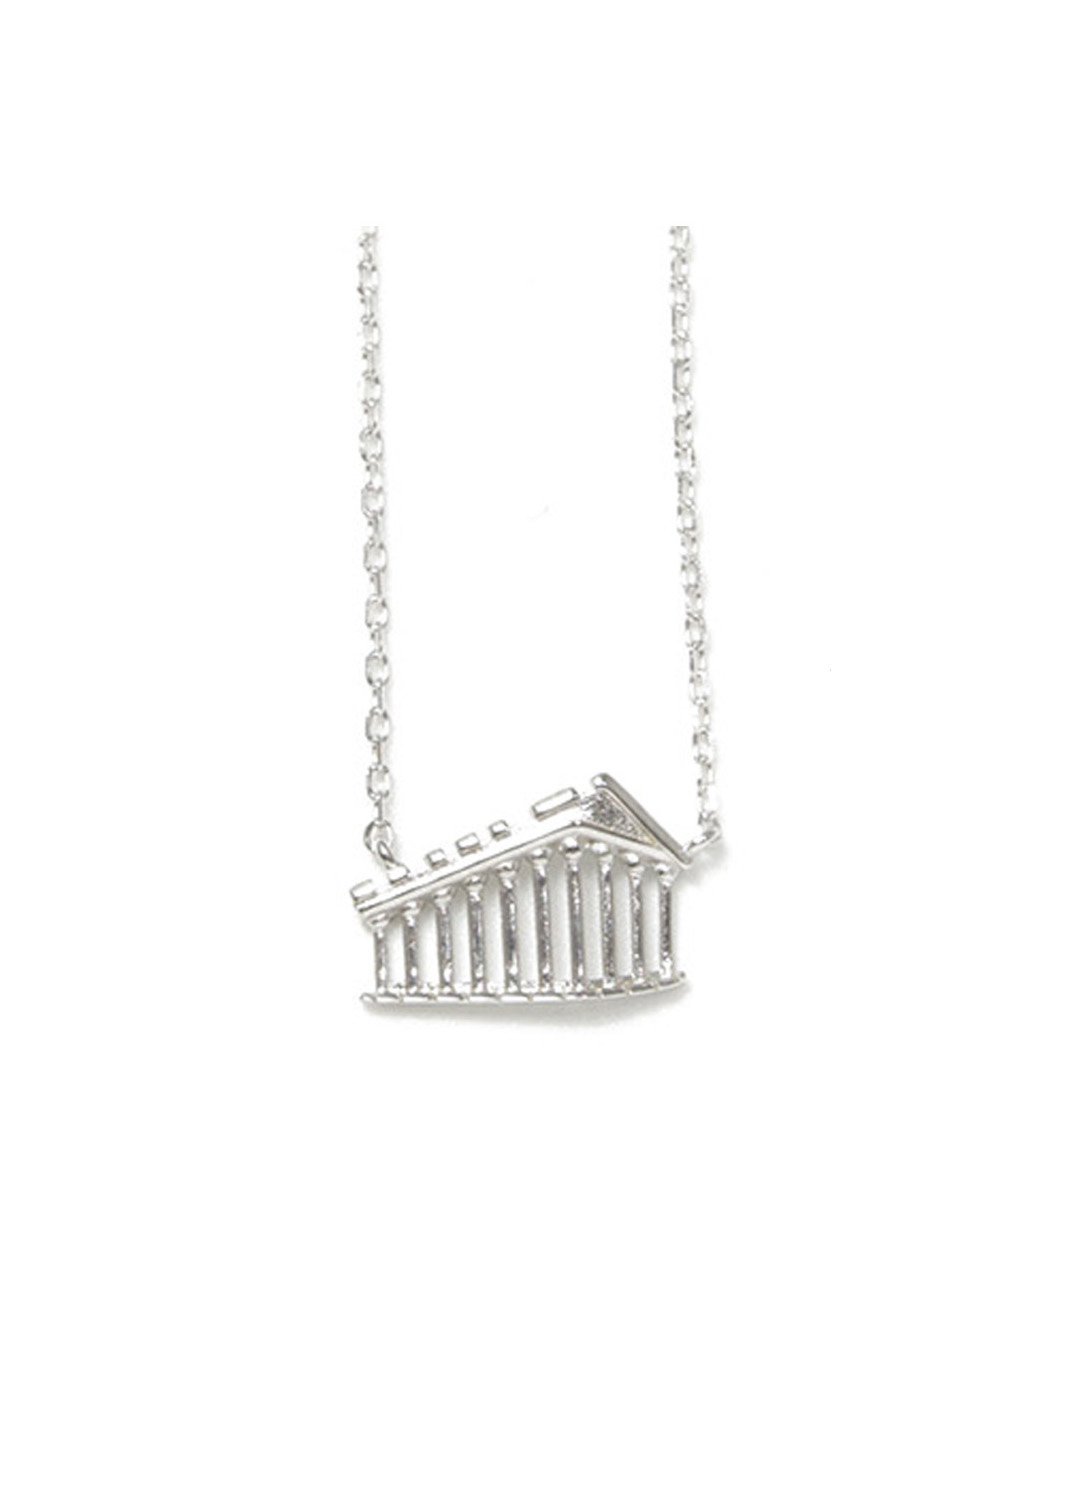 Parthenon of Acropolis silver necklace